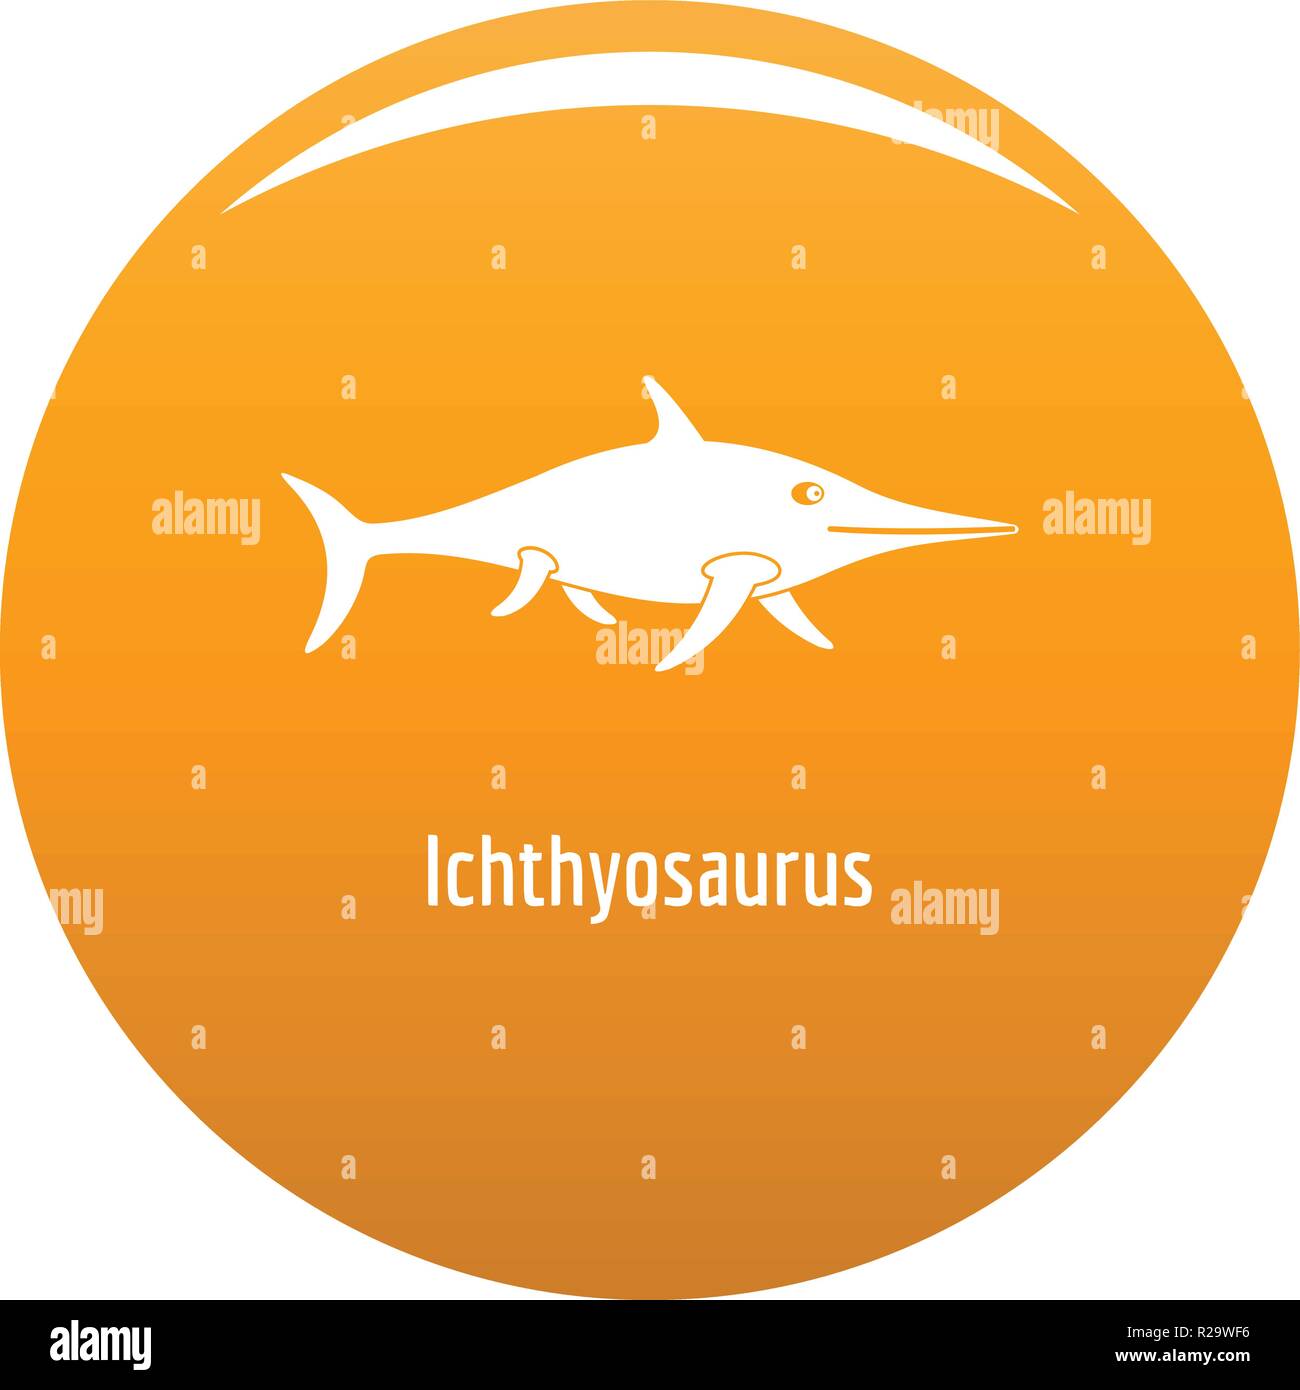 Ichthyosaurus Symbol. Einfache Abbildung von ichthyosaurus Vektor Icon für das Design orange Stock Vektor